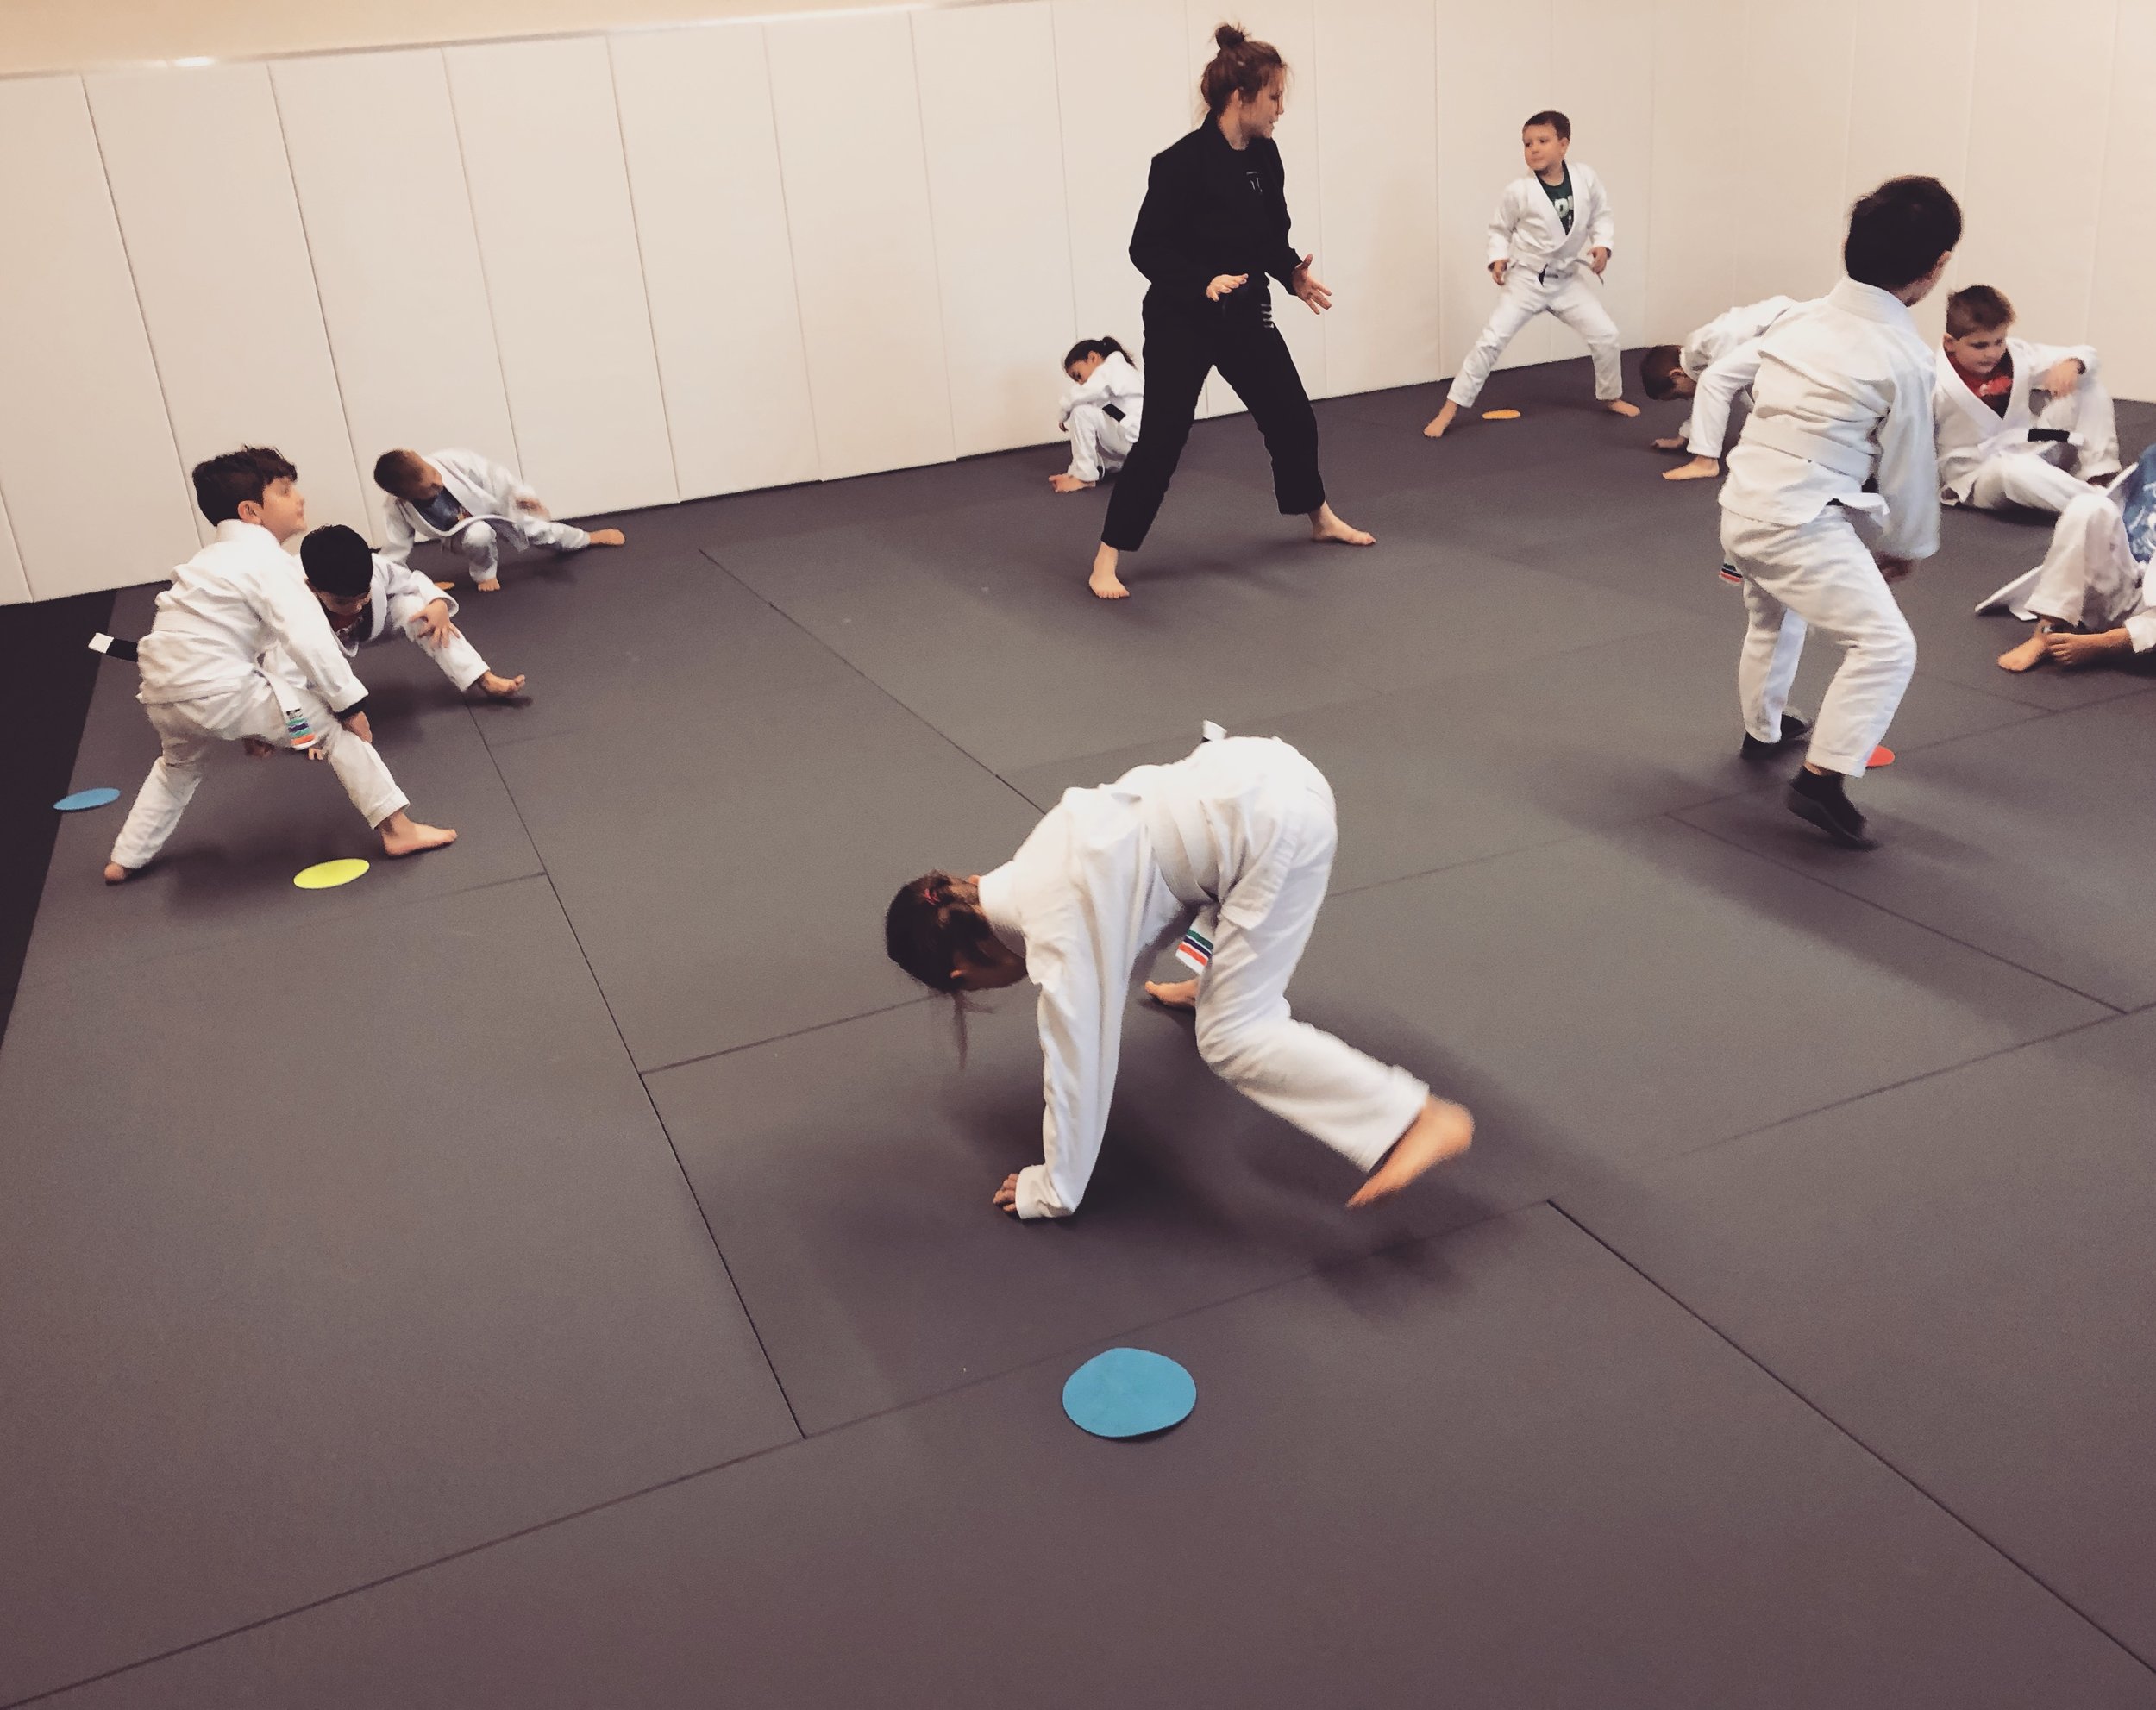 Brazilian Jiu-Jitsu and Self Defense in Coos Bay, Oregon